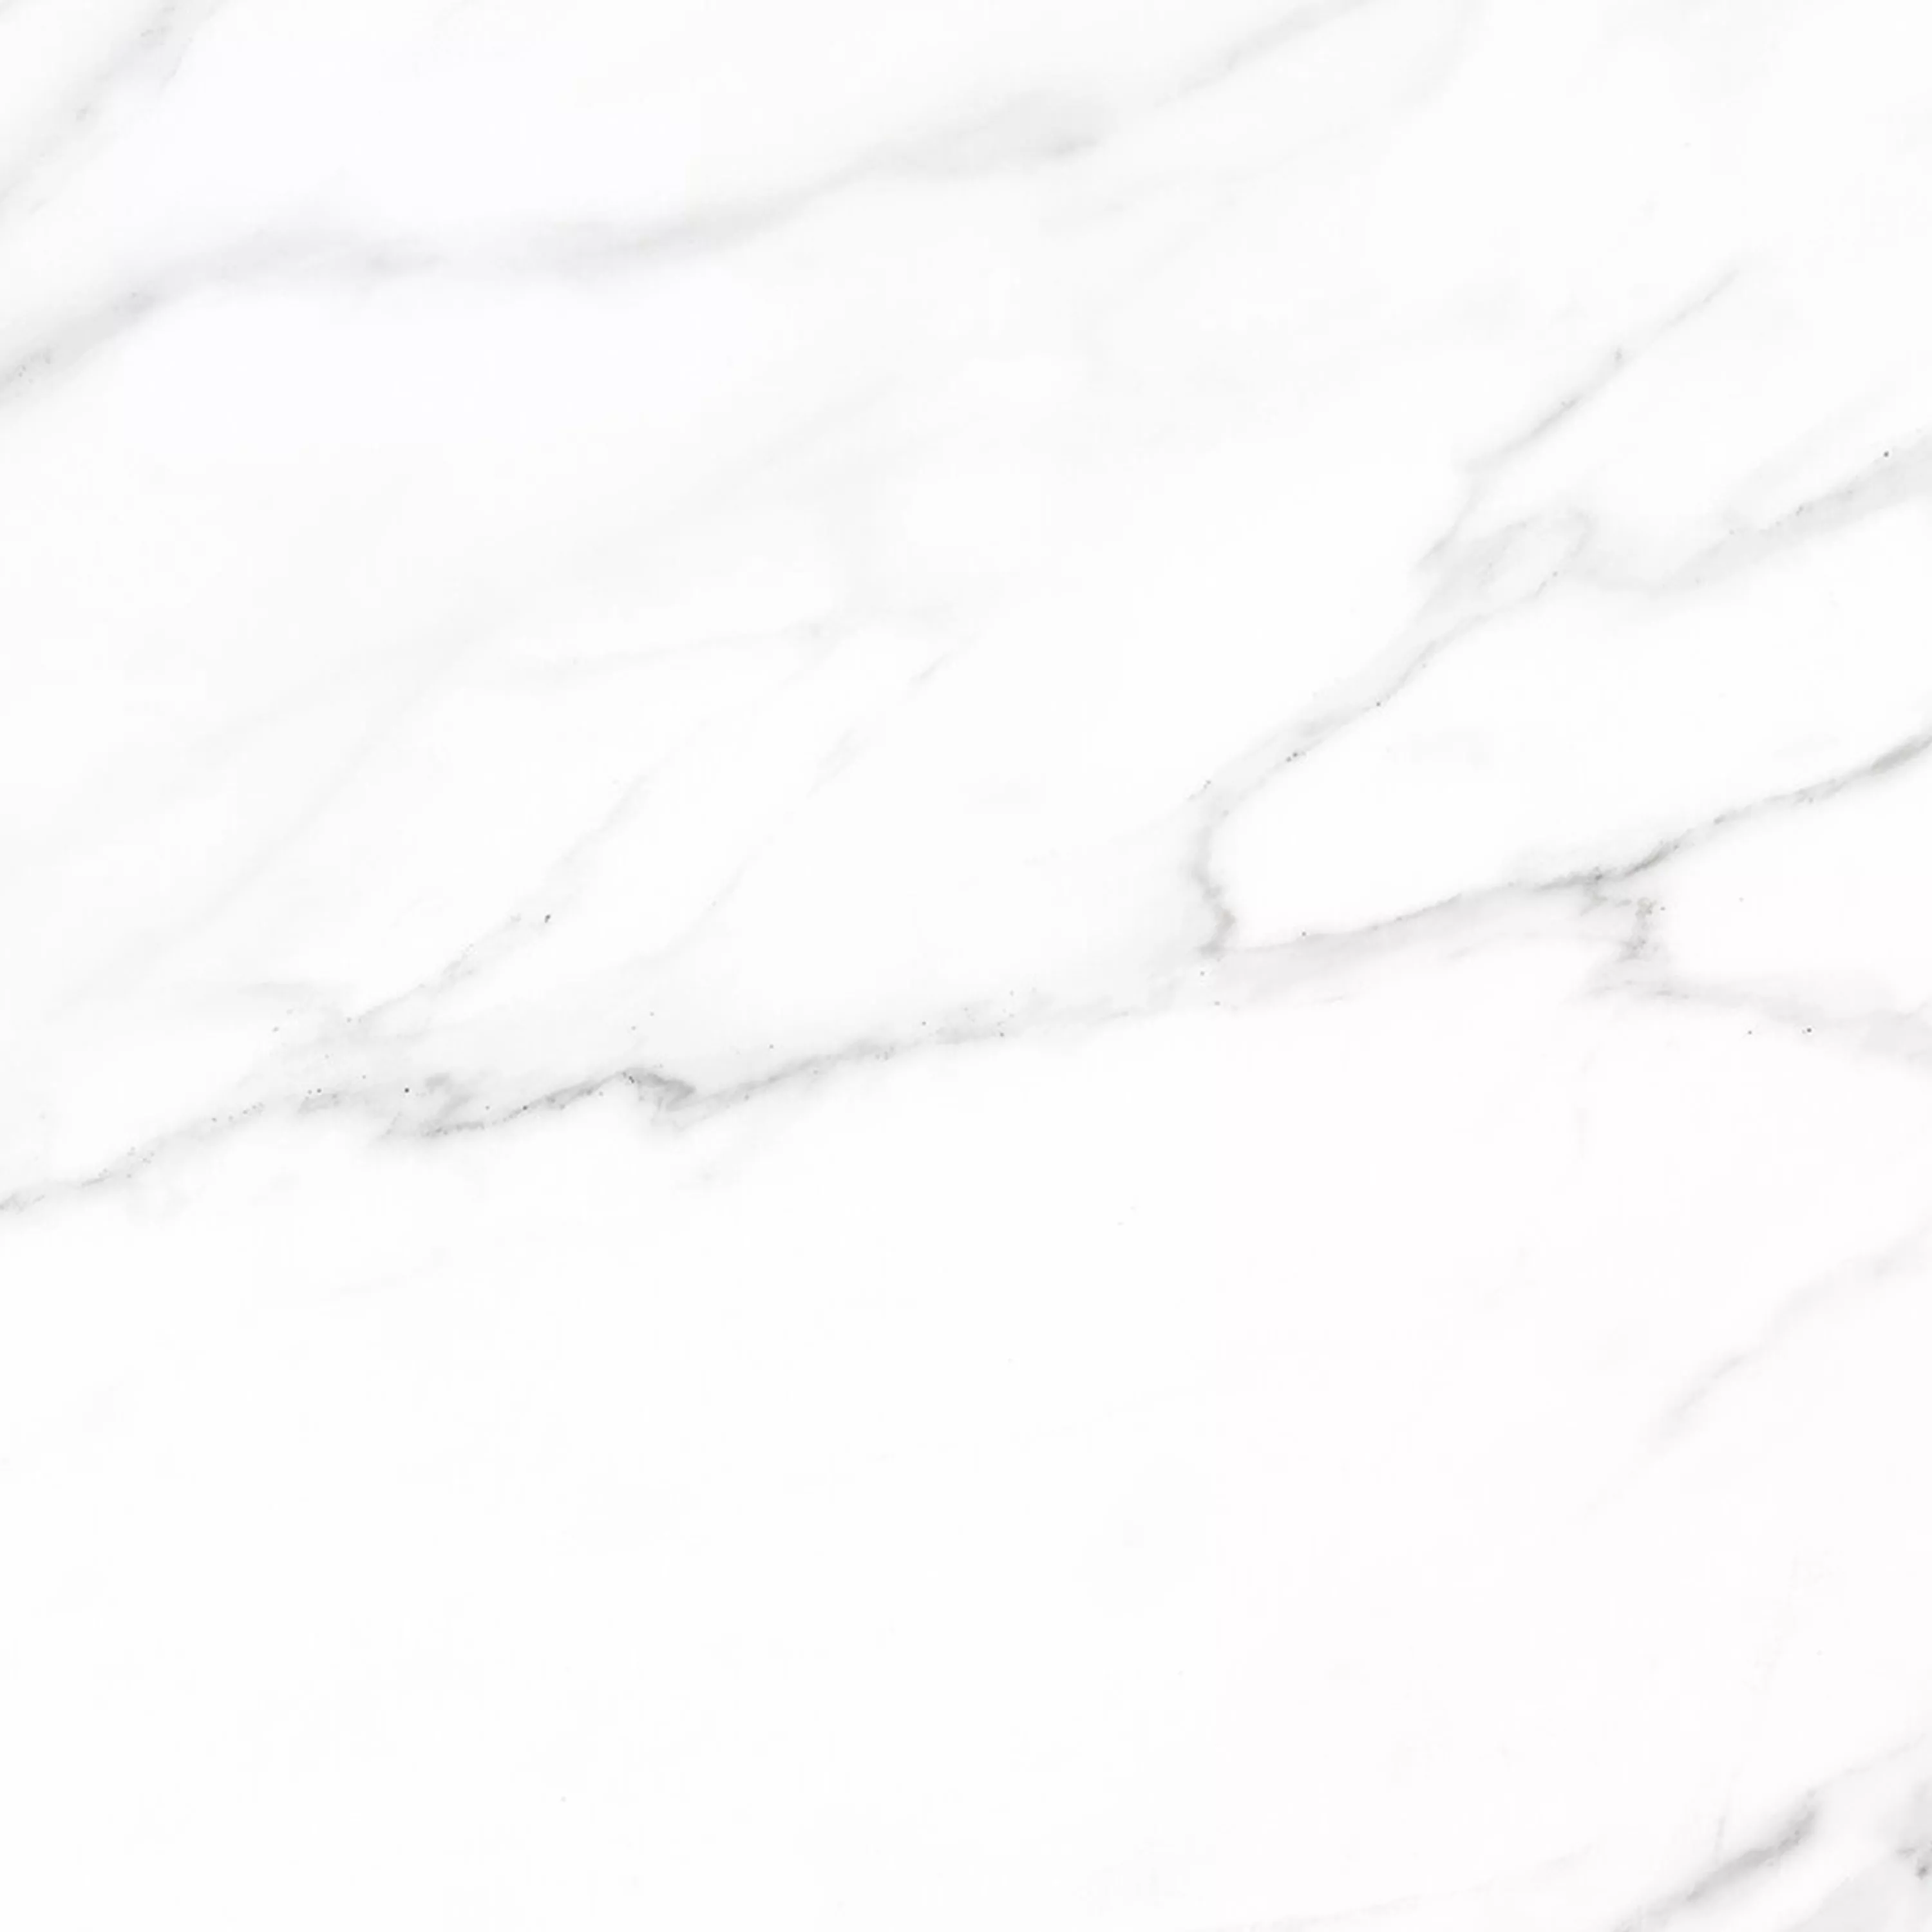 Πλακάκια Δαπέδου Arcadia Μαρμάρινη Όψη Αμεμπτος Ασπρο 60x60cm